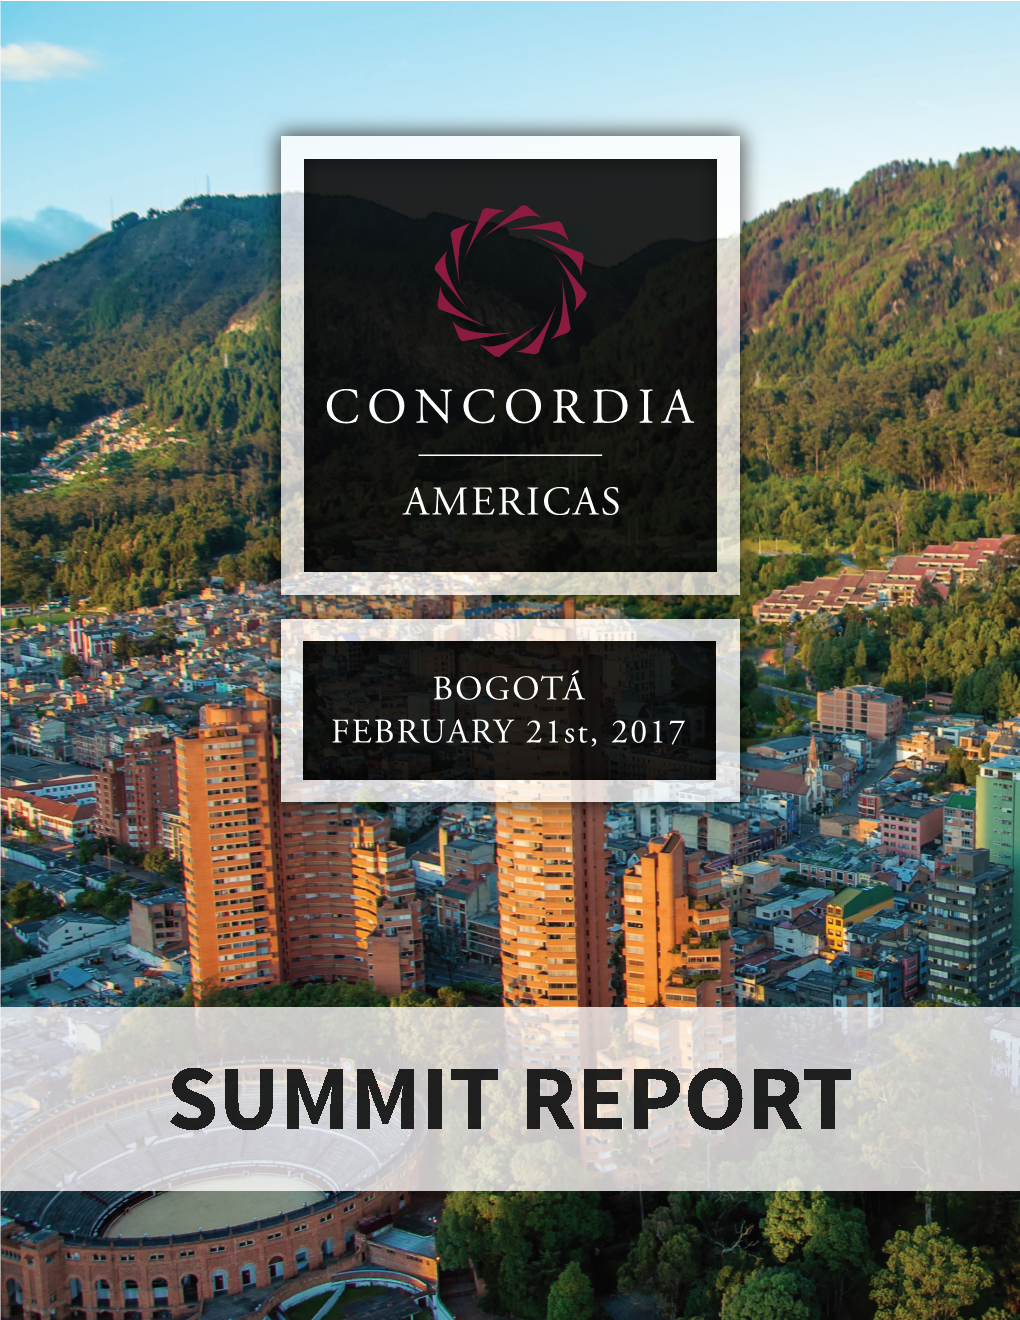 Concordia Americas Summit in Bogotá on February 21, 2017